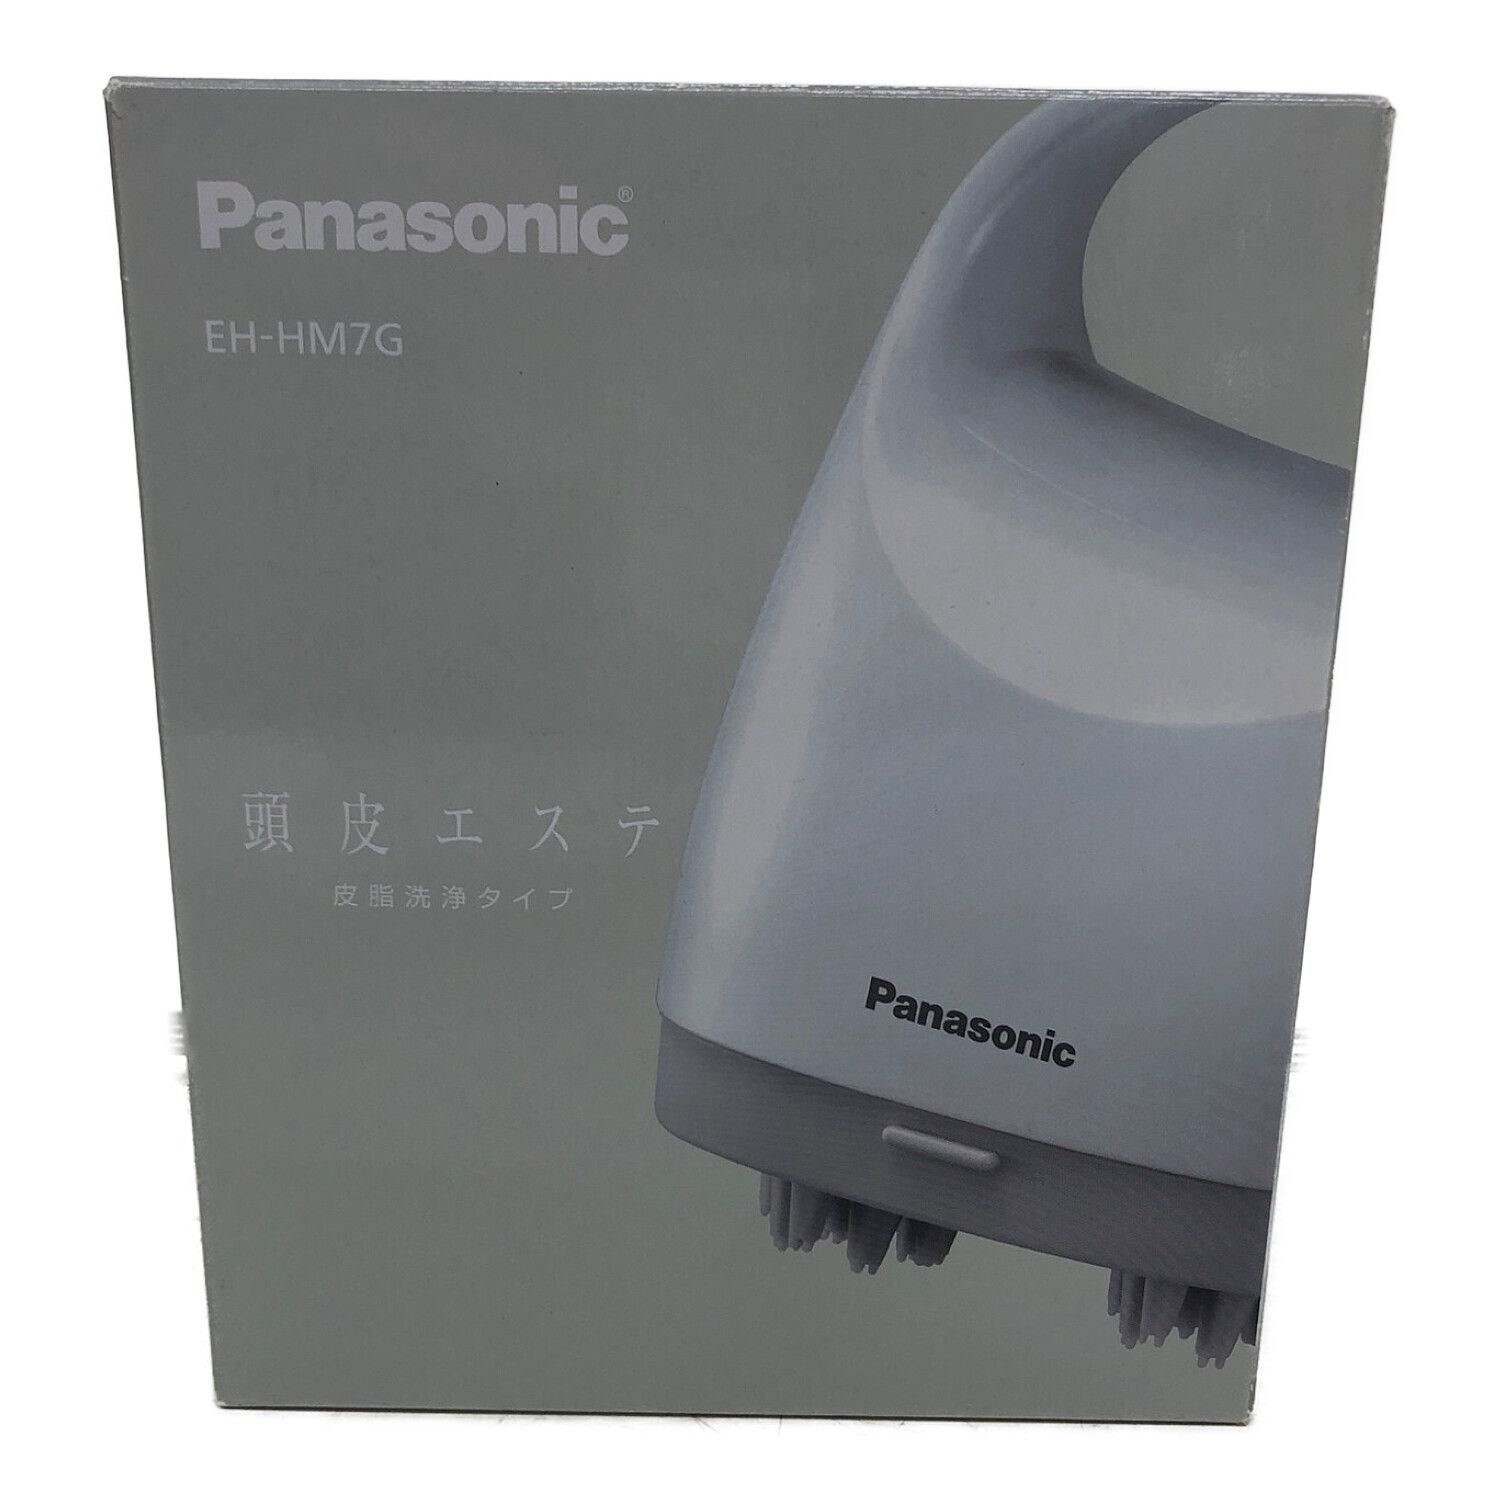 Panasonic EH-HM7G-W WHITE